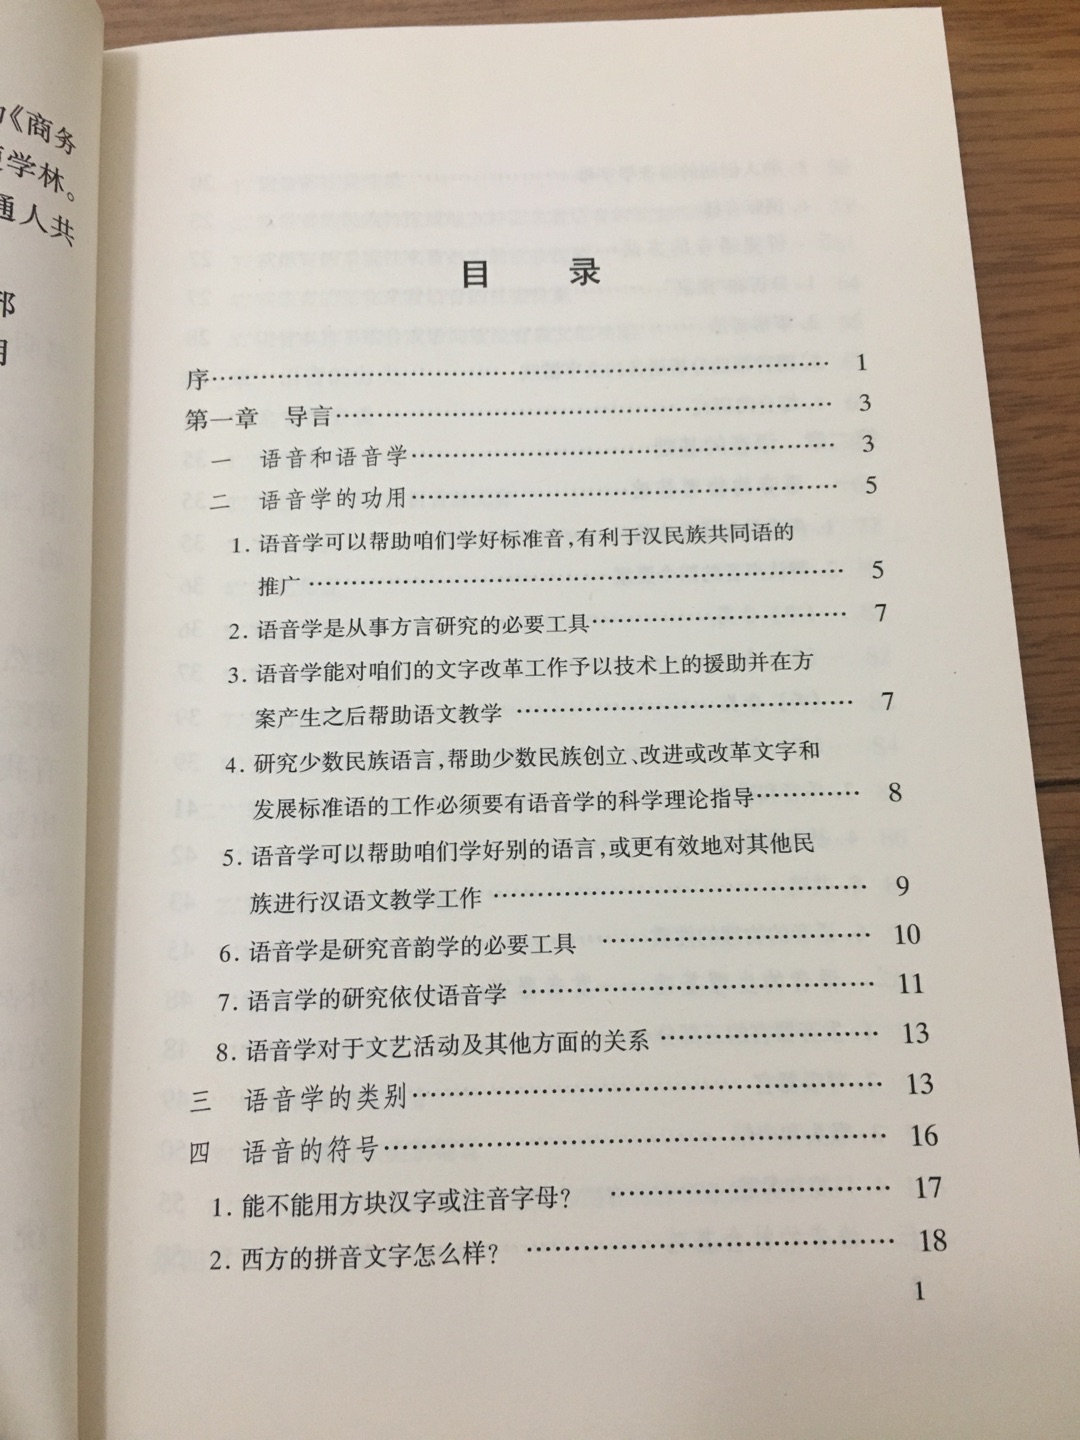 考研时借来读过的书，非常经典，汉语言方面的学习者必读的专业书，值得一读。